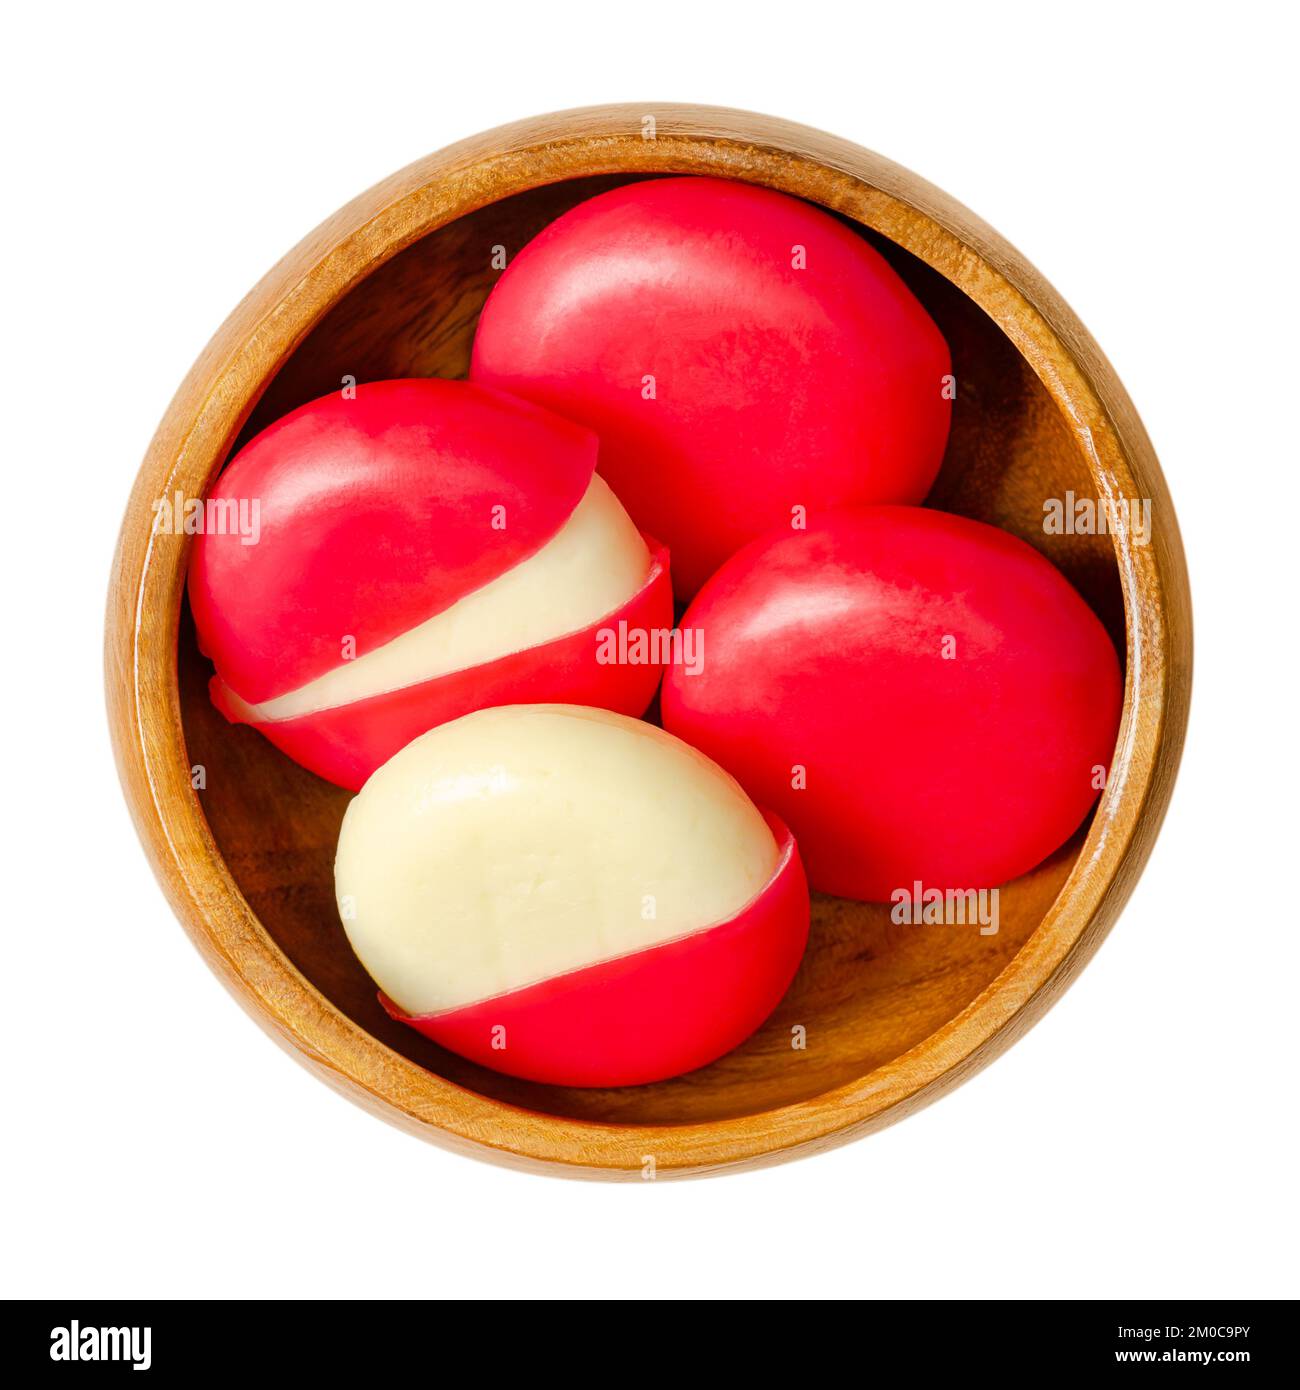 Imbiss-Käsescheiben in roten Wachsgehäusen, in einer Holzschüssel. Kleine edamer-Scheiben, jeweils mit einer Mischung aus rotem Paraffin umhüllt. Stockfoto